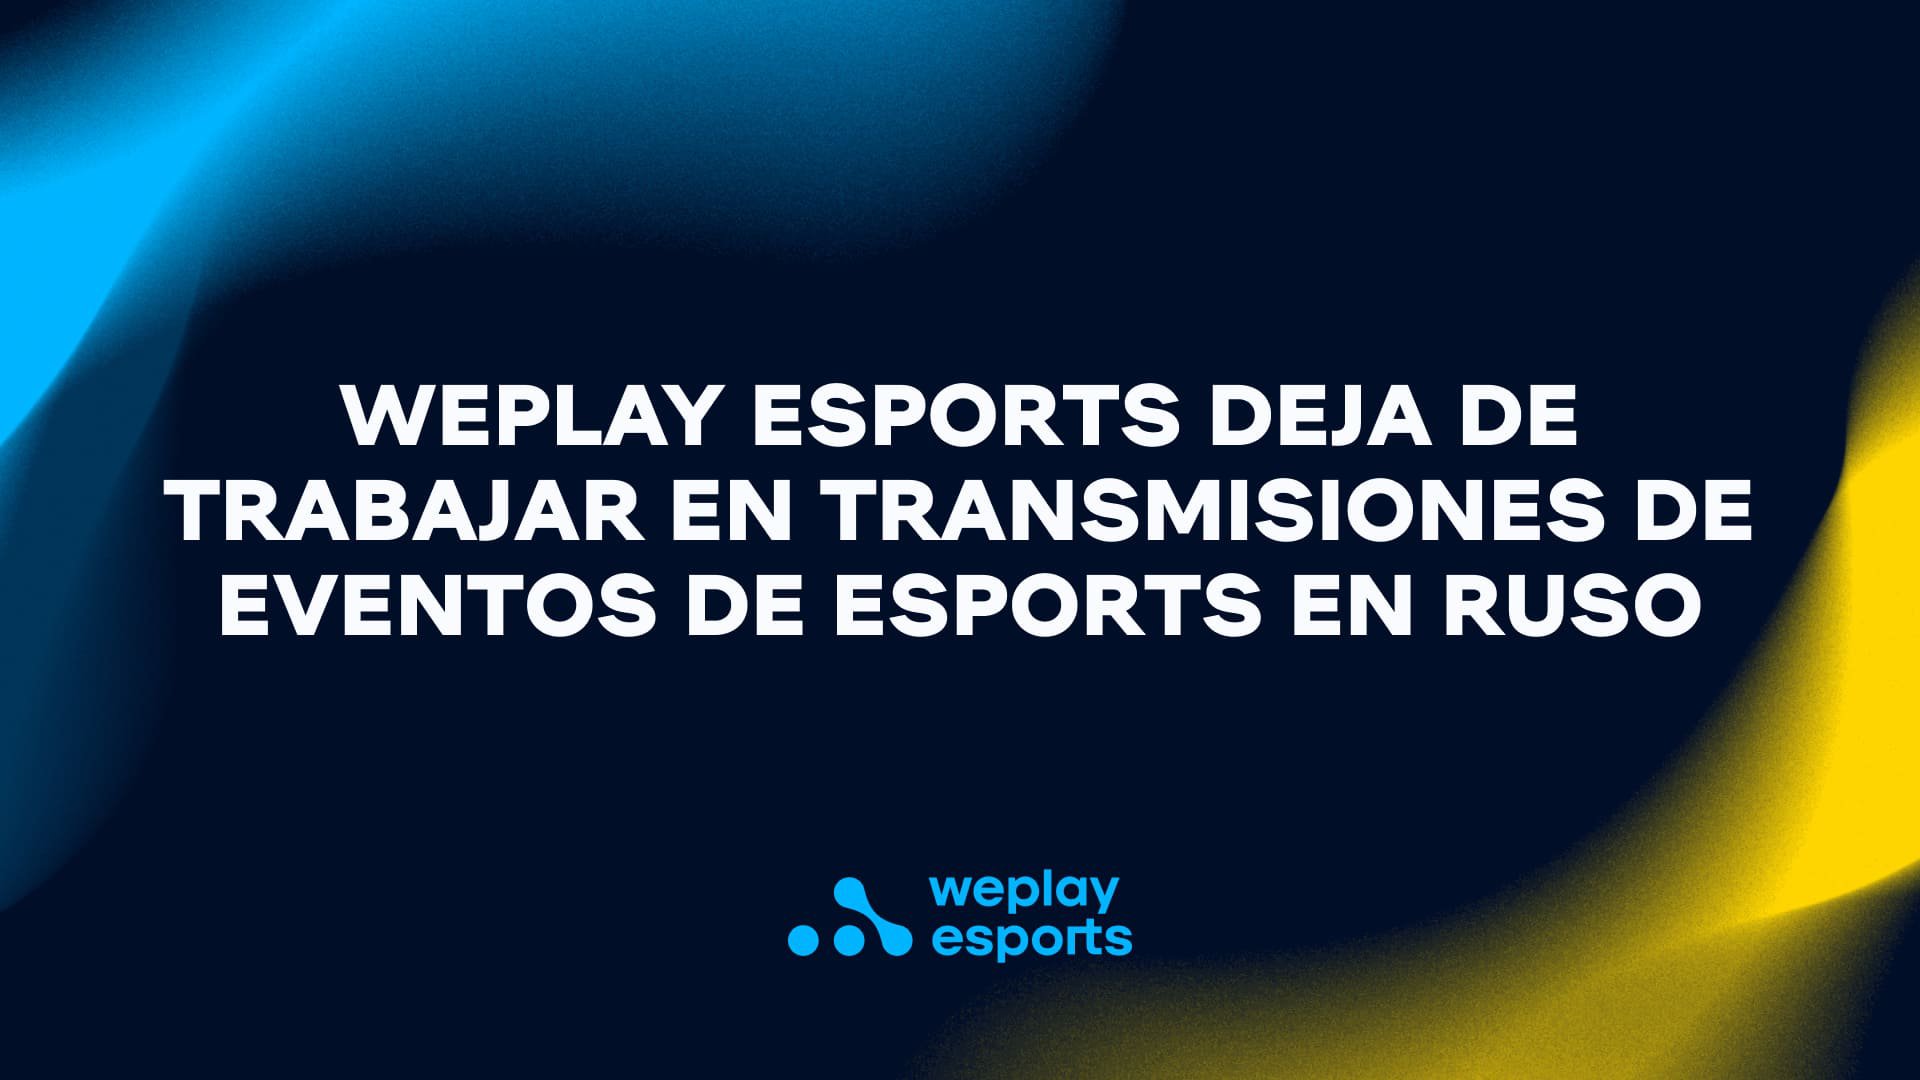 WePlay Esports deja de trabajar en transmisiones de eventos de esports en ruso. Visual: WePlay Holding